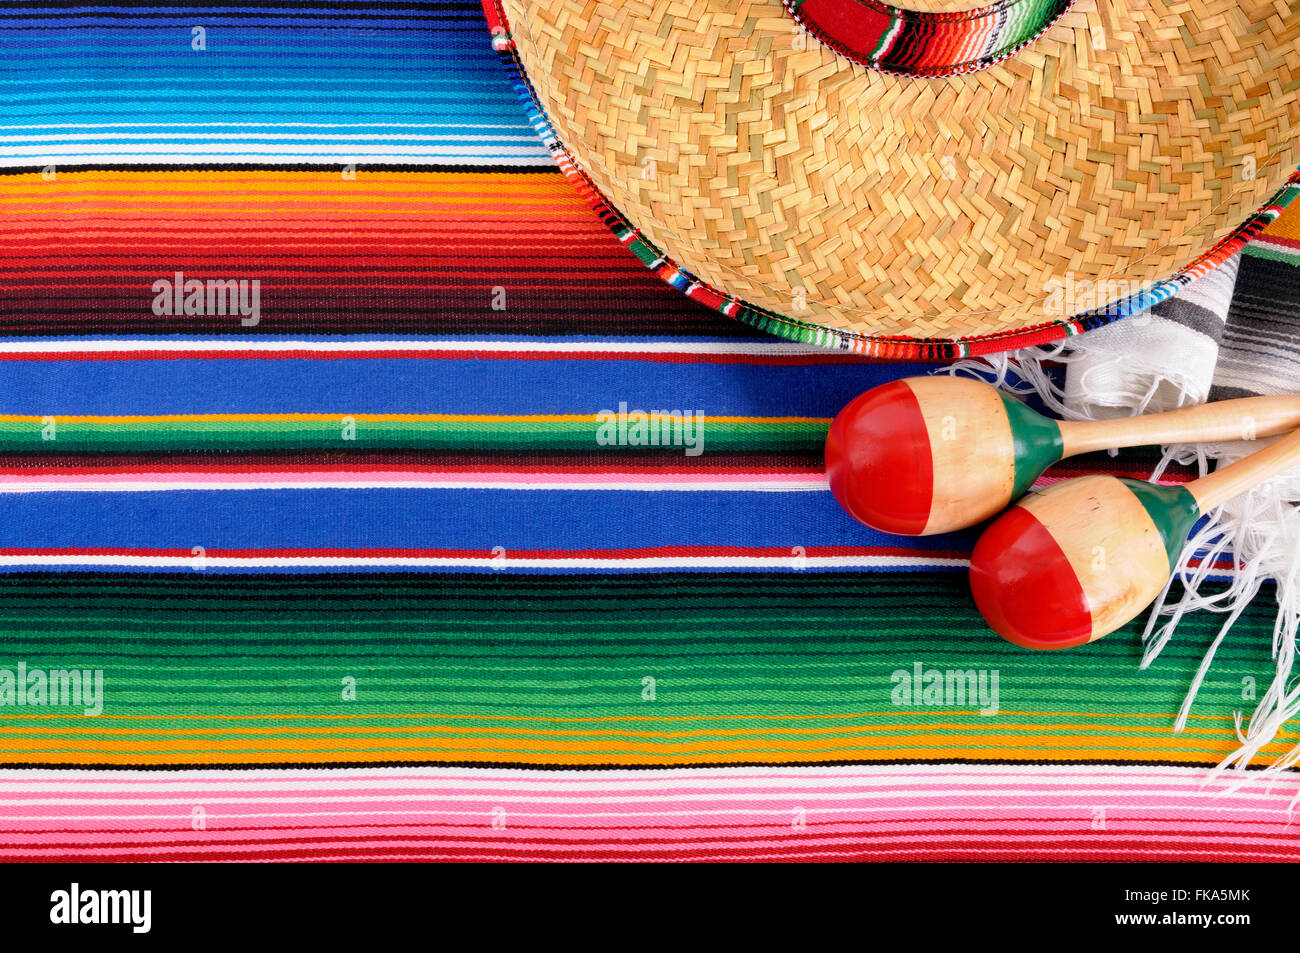 Mexikanischen Hintergrund mit Stroh Sombrero-Hut, Maracas und traditionellen Sarape Decke oder Teppich.  Platz für Kopie. Stockfoto